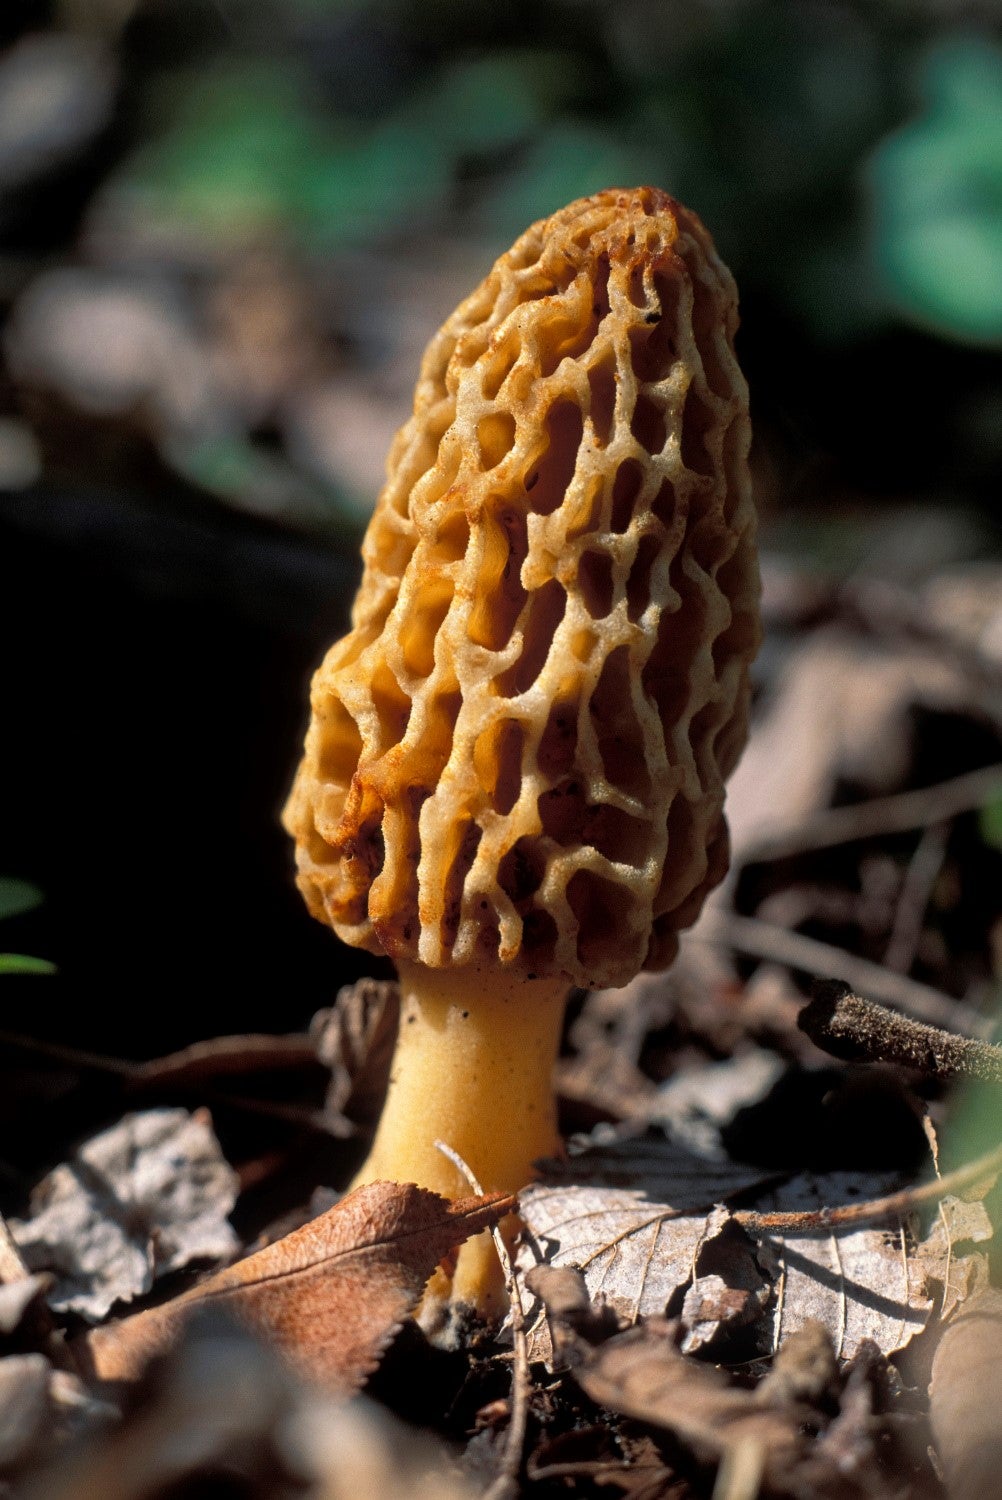 A close up of a morel mushroom.